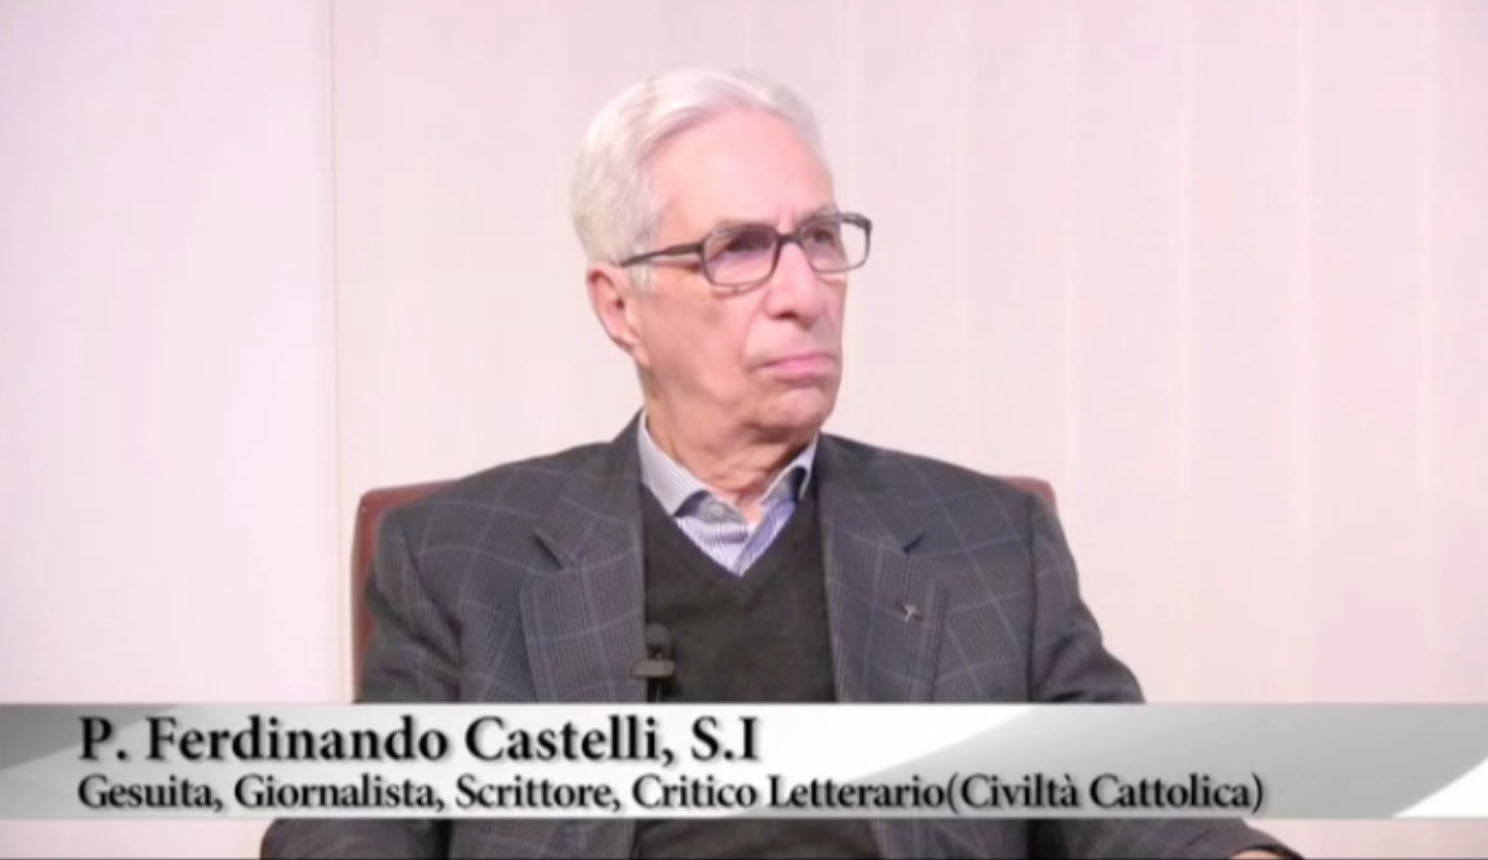 P. Ferdinando Castelli S.I. - Gesuita, Giornalista, Scrittore, Critico Letterario (Civiltà Cattolica)